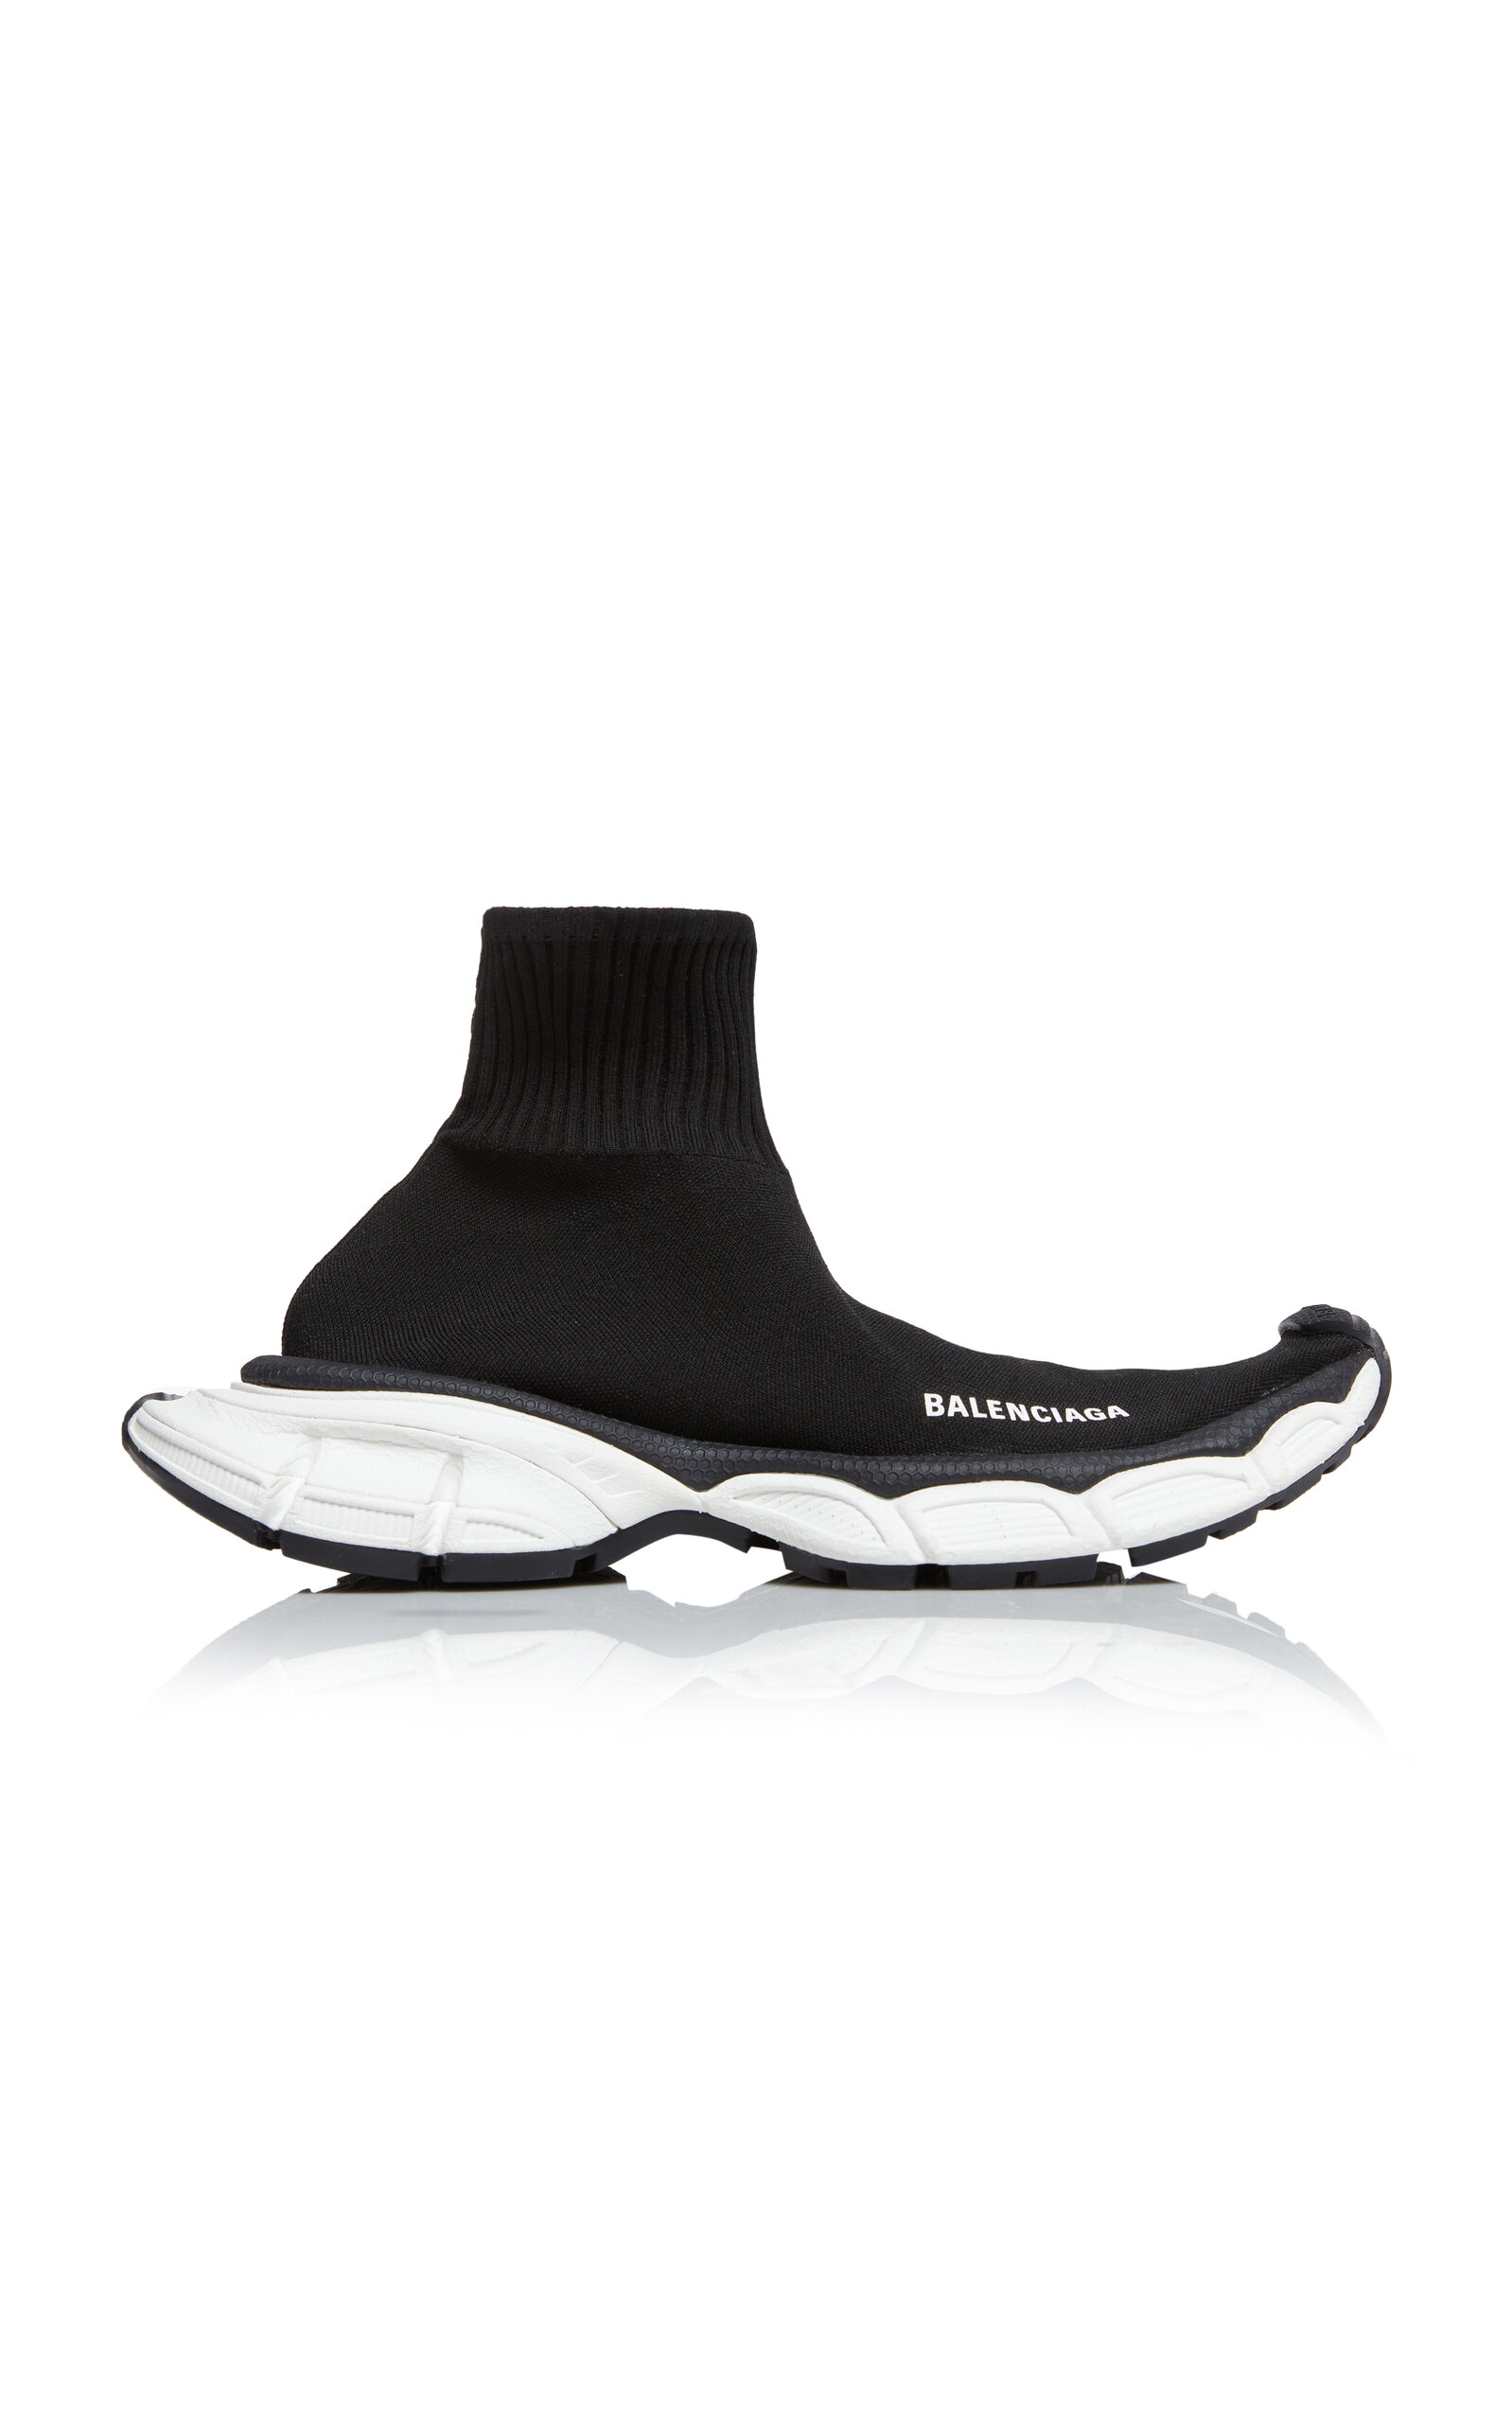 Balenciaga - 3XL Knit Sneakers - Black - IT 37 - Moda Operandi